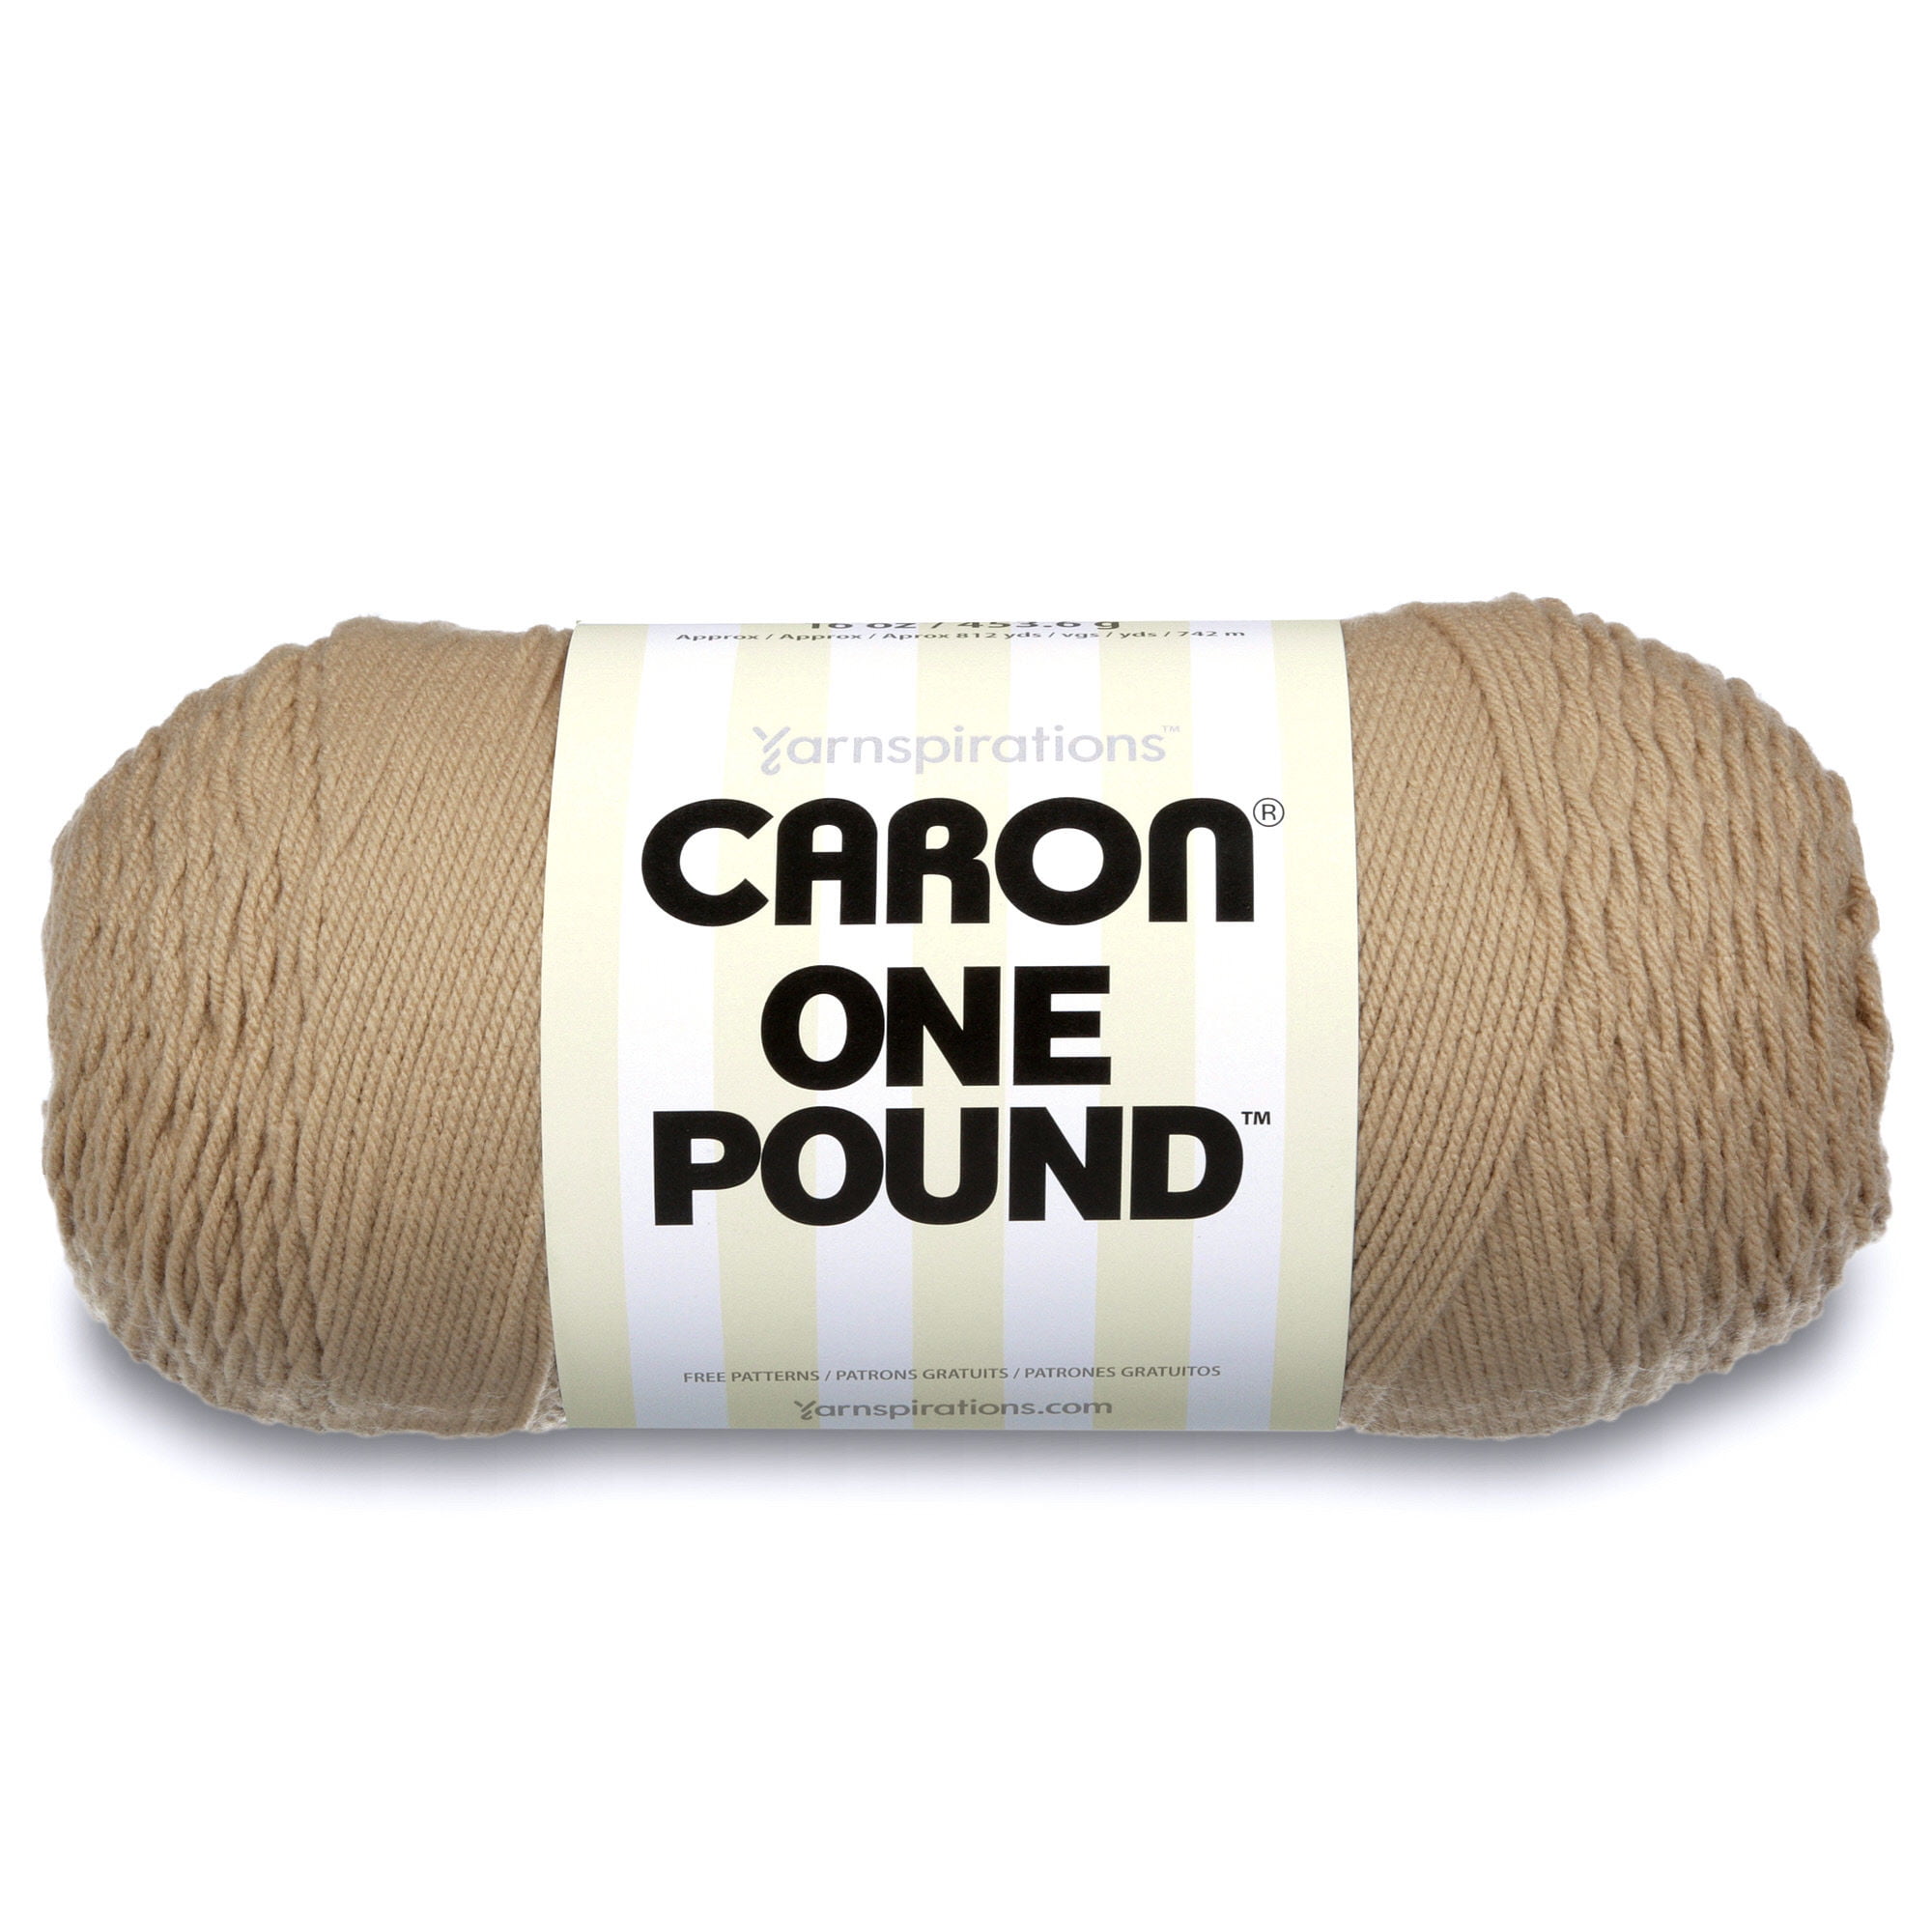 Caron One Pound Black Yarn - 2 Pack of 454g/16oz - Acrylic - 4 Medium  (Worsted) - 812 Yards, 2 - Pay Less Super Markets